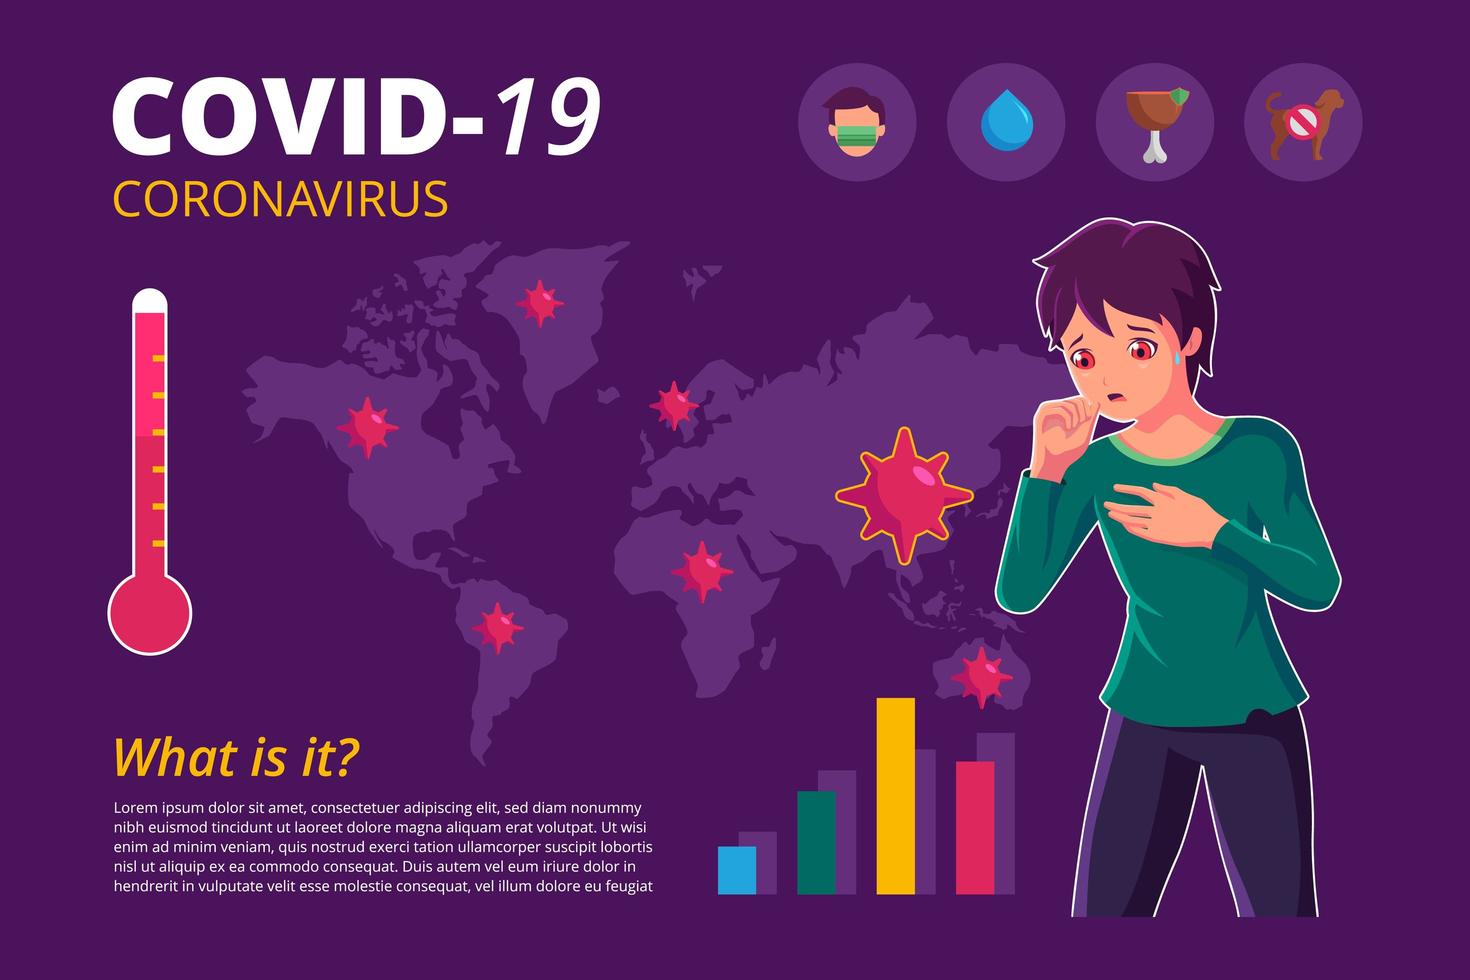 pôster infográfico de covid-19 sobre coronavírus com menino tossindo vetor